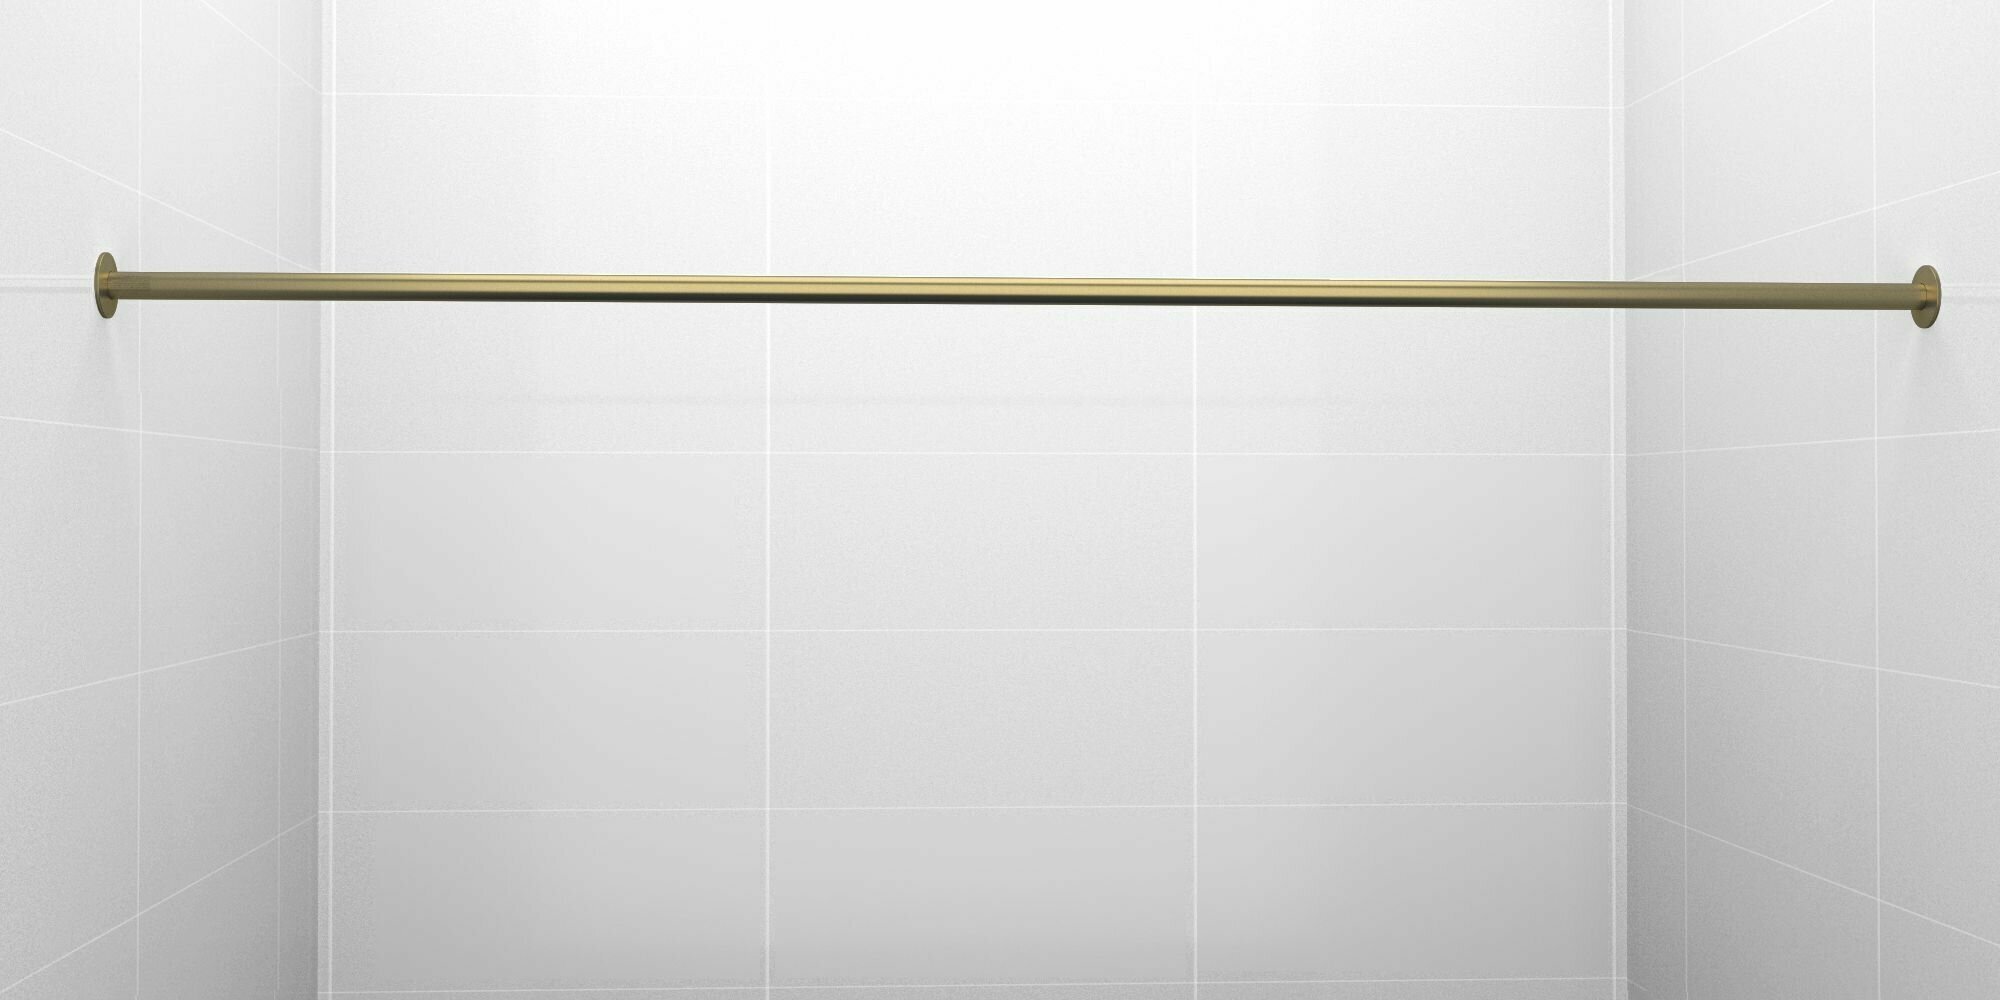 Карниз для ванной 160см (Штанга 20мм) Прямой Усиленный крепление 10см цельный из нержавейки цвет бронза